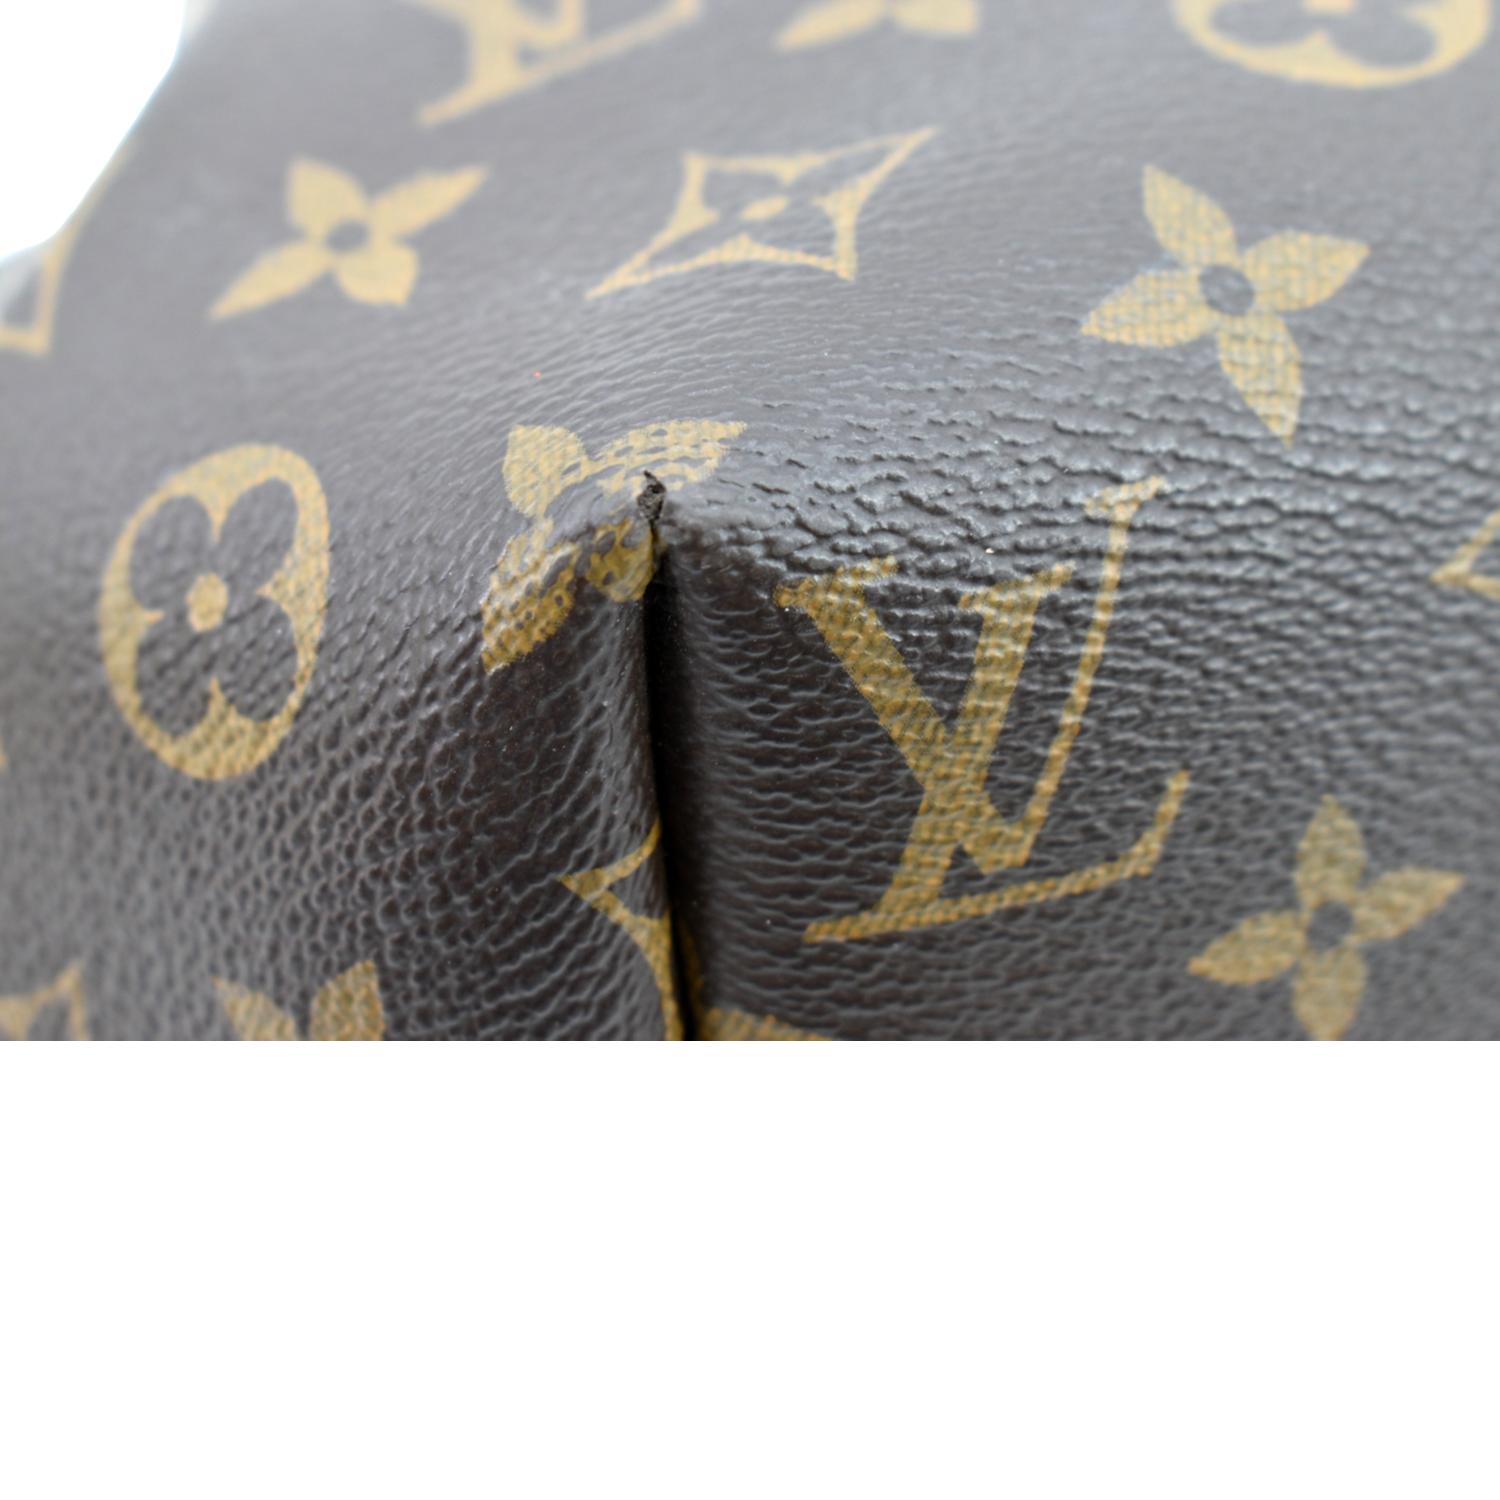 Louis Vuitton Turenne GM Monogram Canvas Shoulder Bag-TheShadesHut